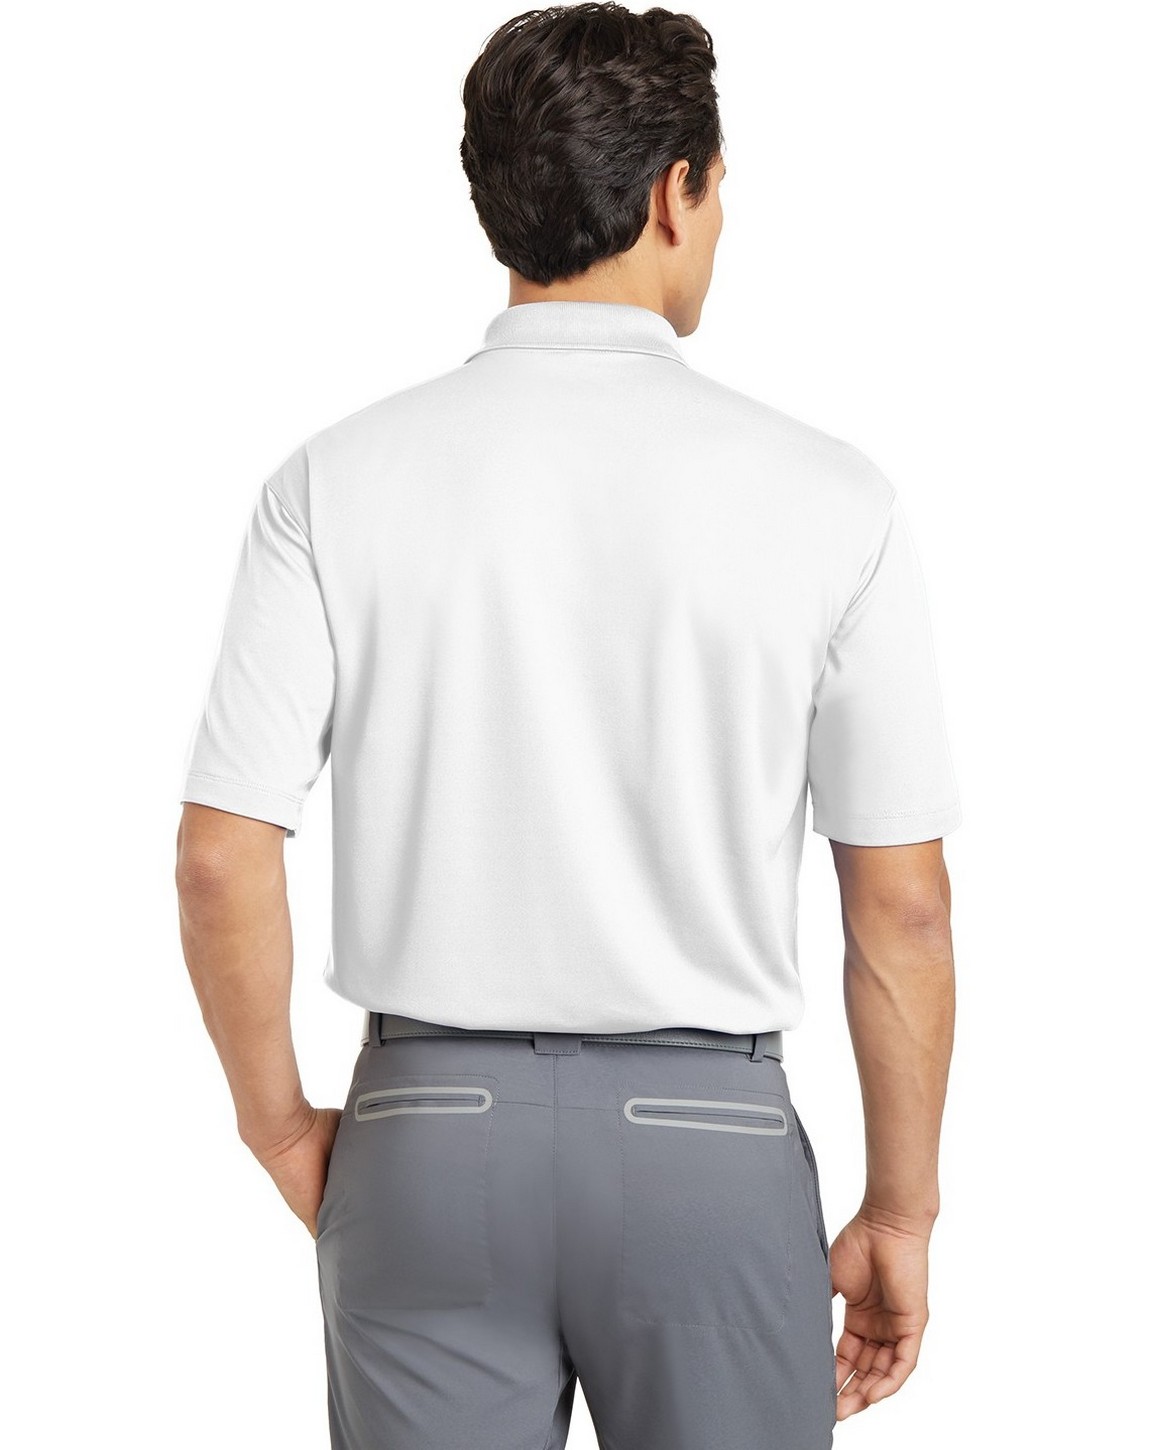 Nike Golf 363807 Men Dri-FIT Micro Pique Polo Shirt